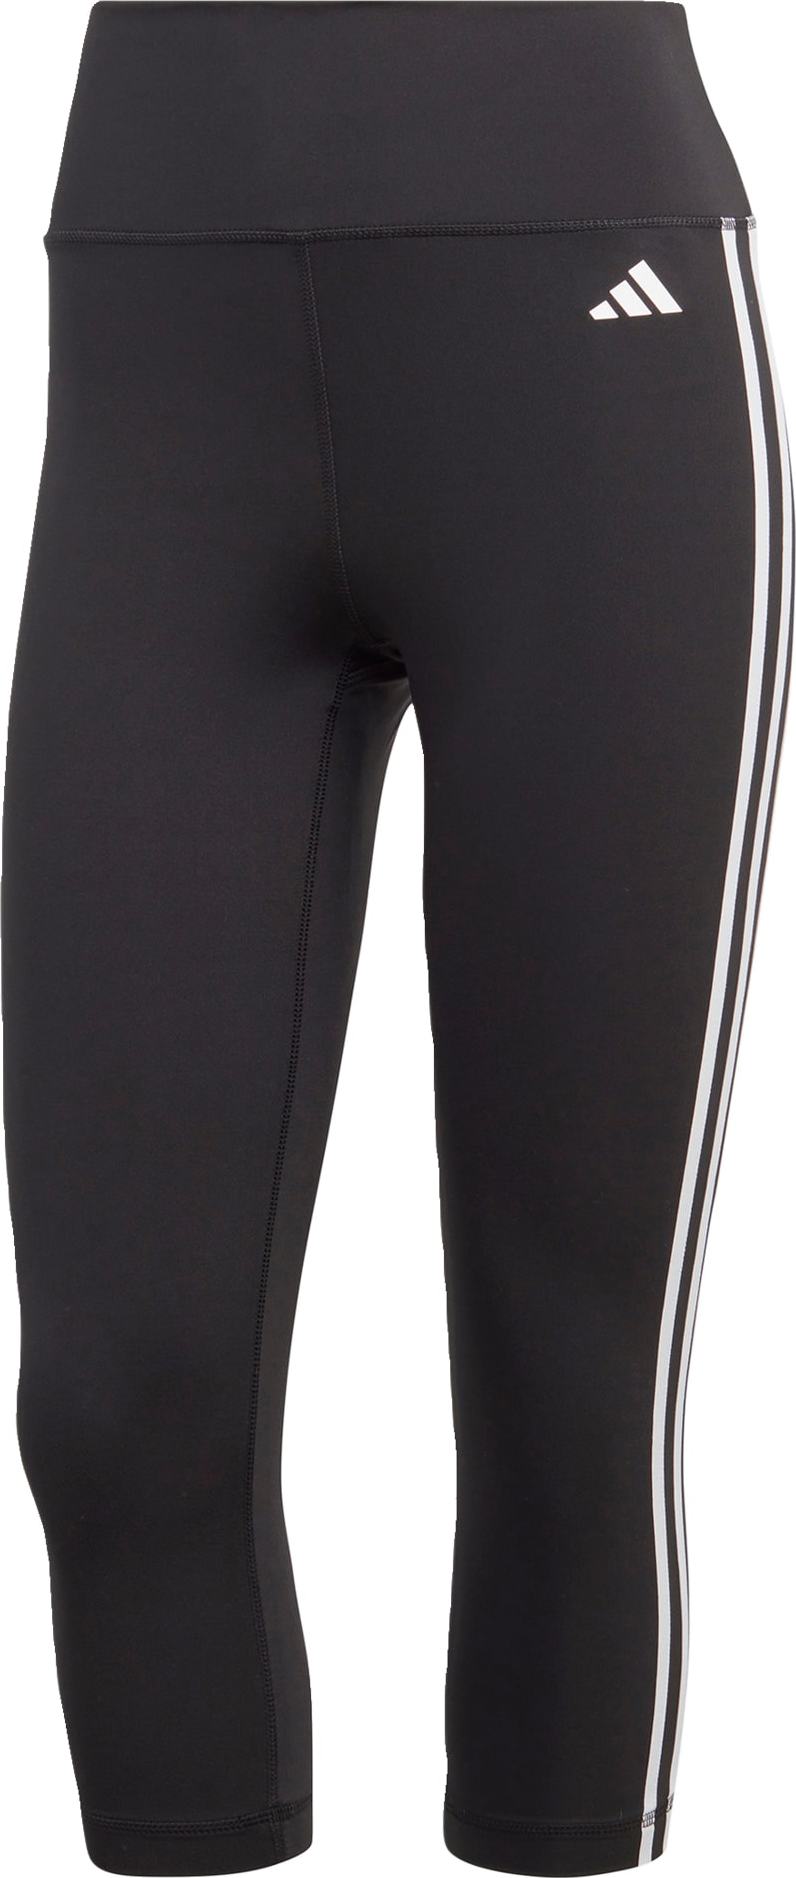 Sportovní kalhoty 'Train Essentials 3-Stripes High-Waisted 3/4' adidas performance černá / bílá